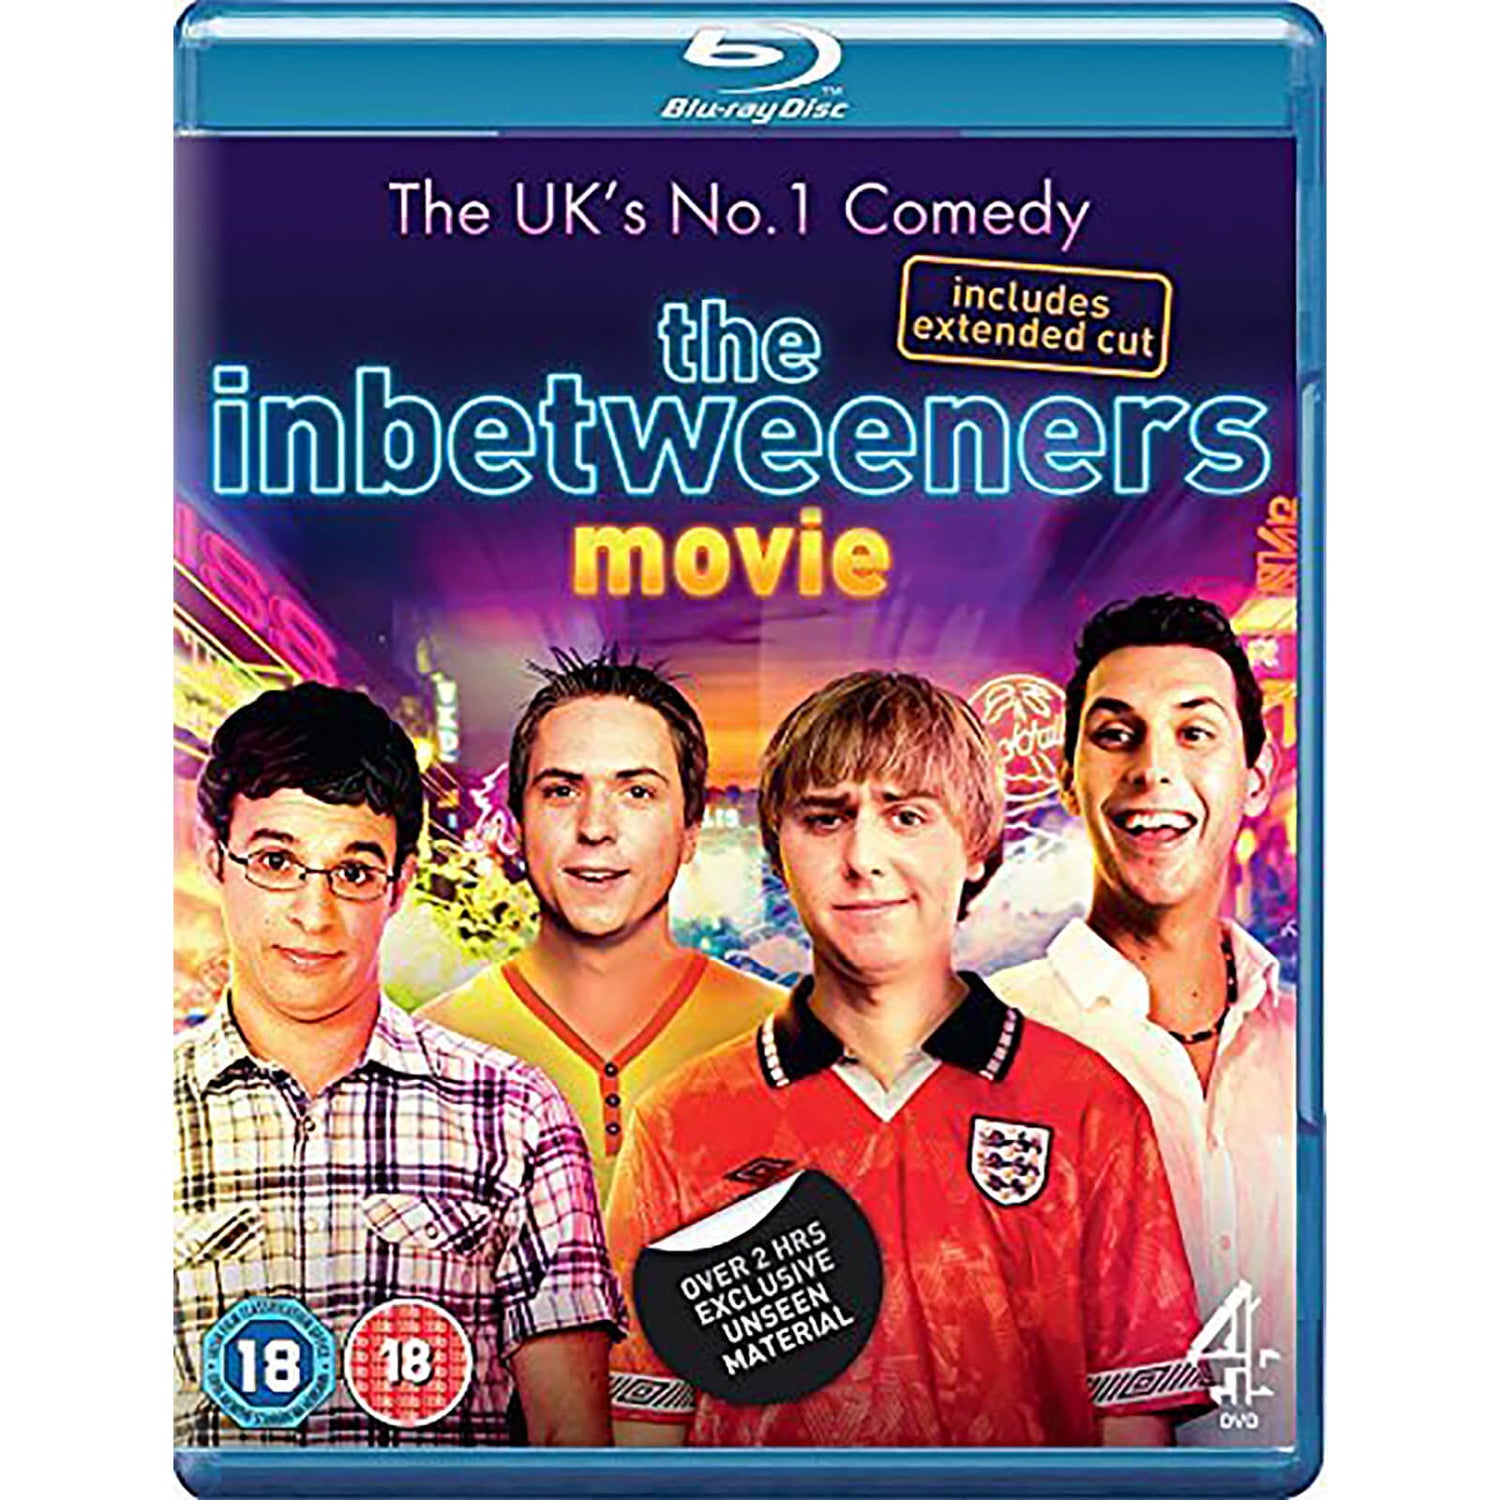 Le film The Inbetweeners